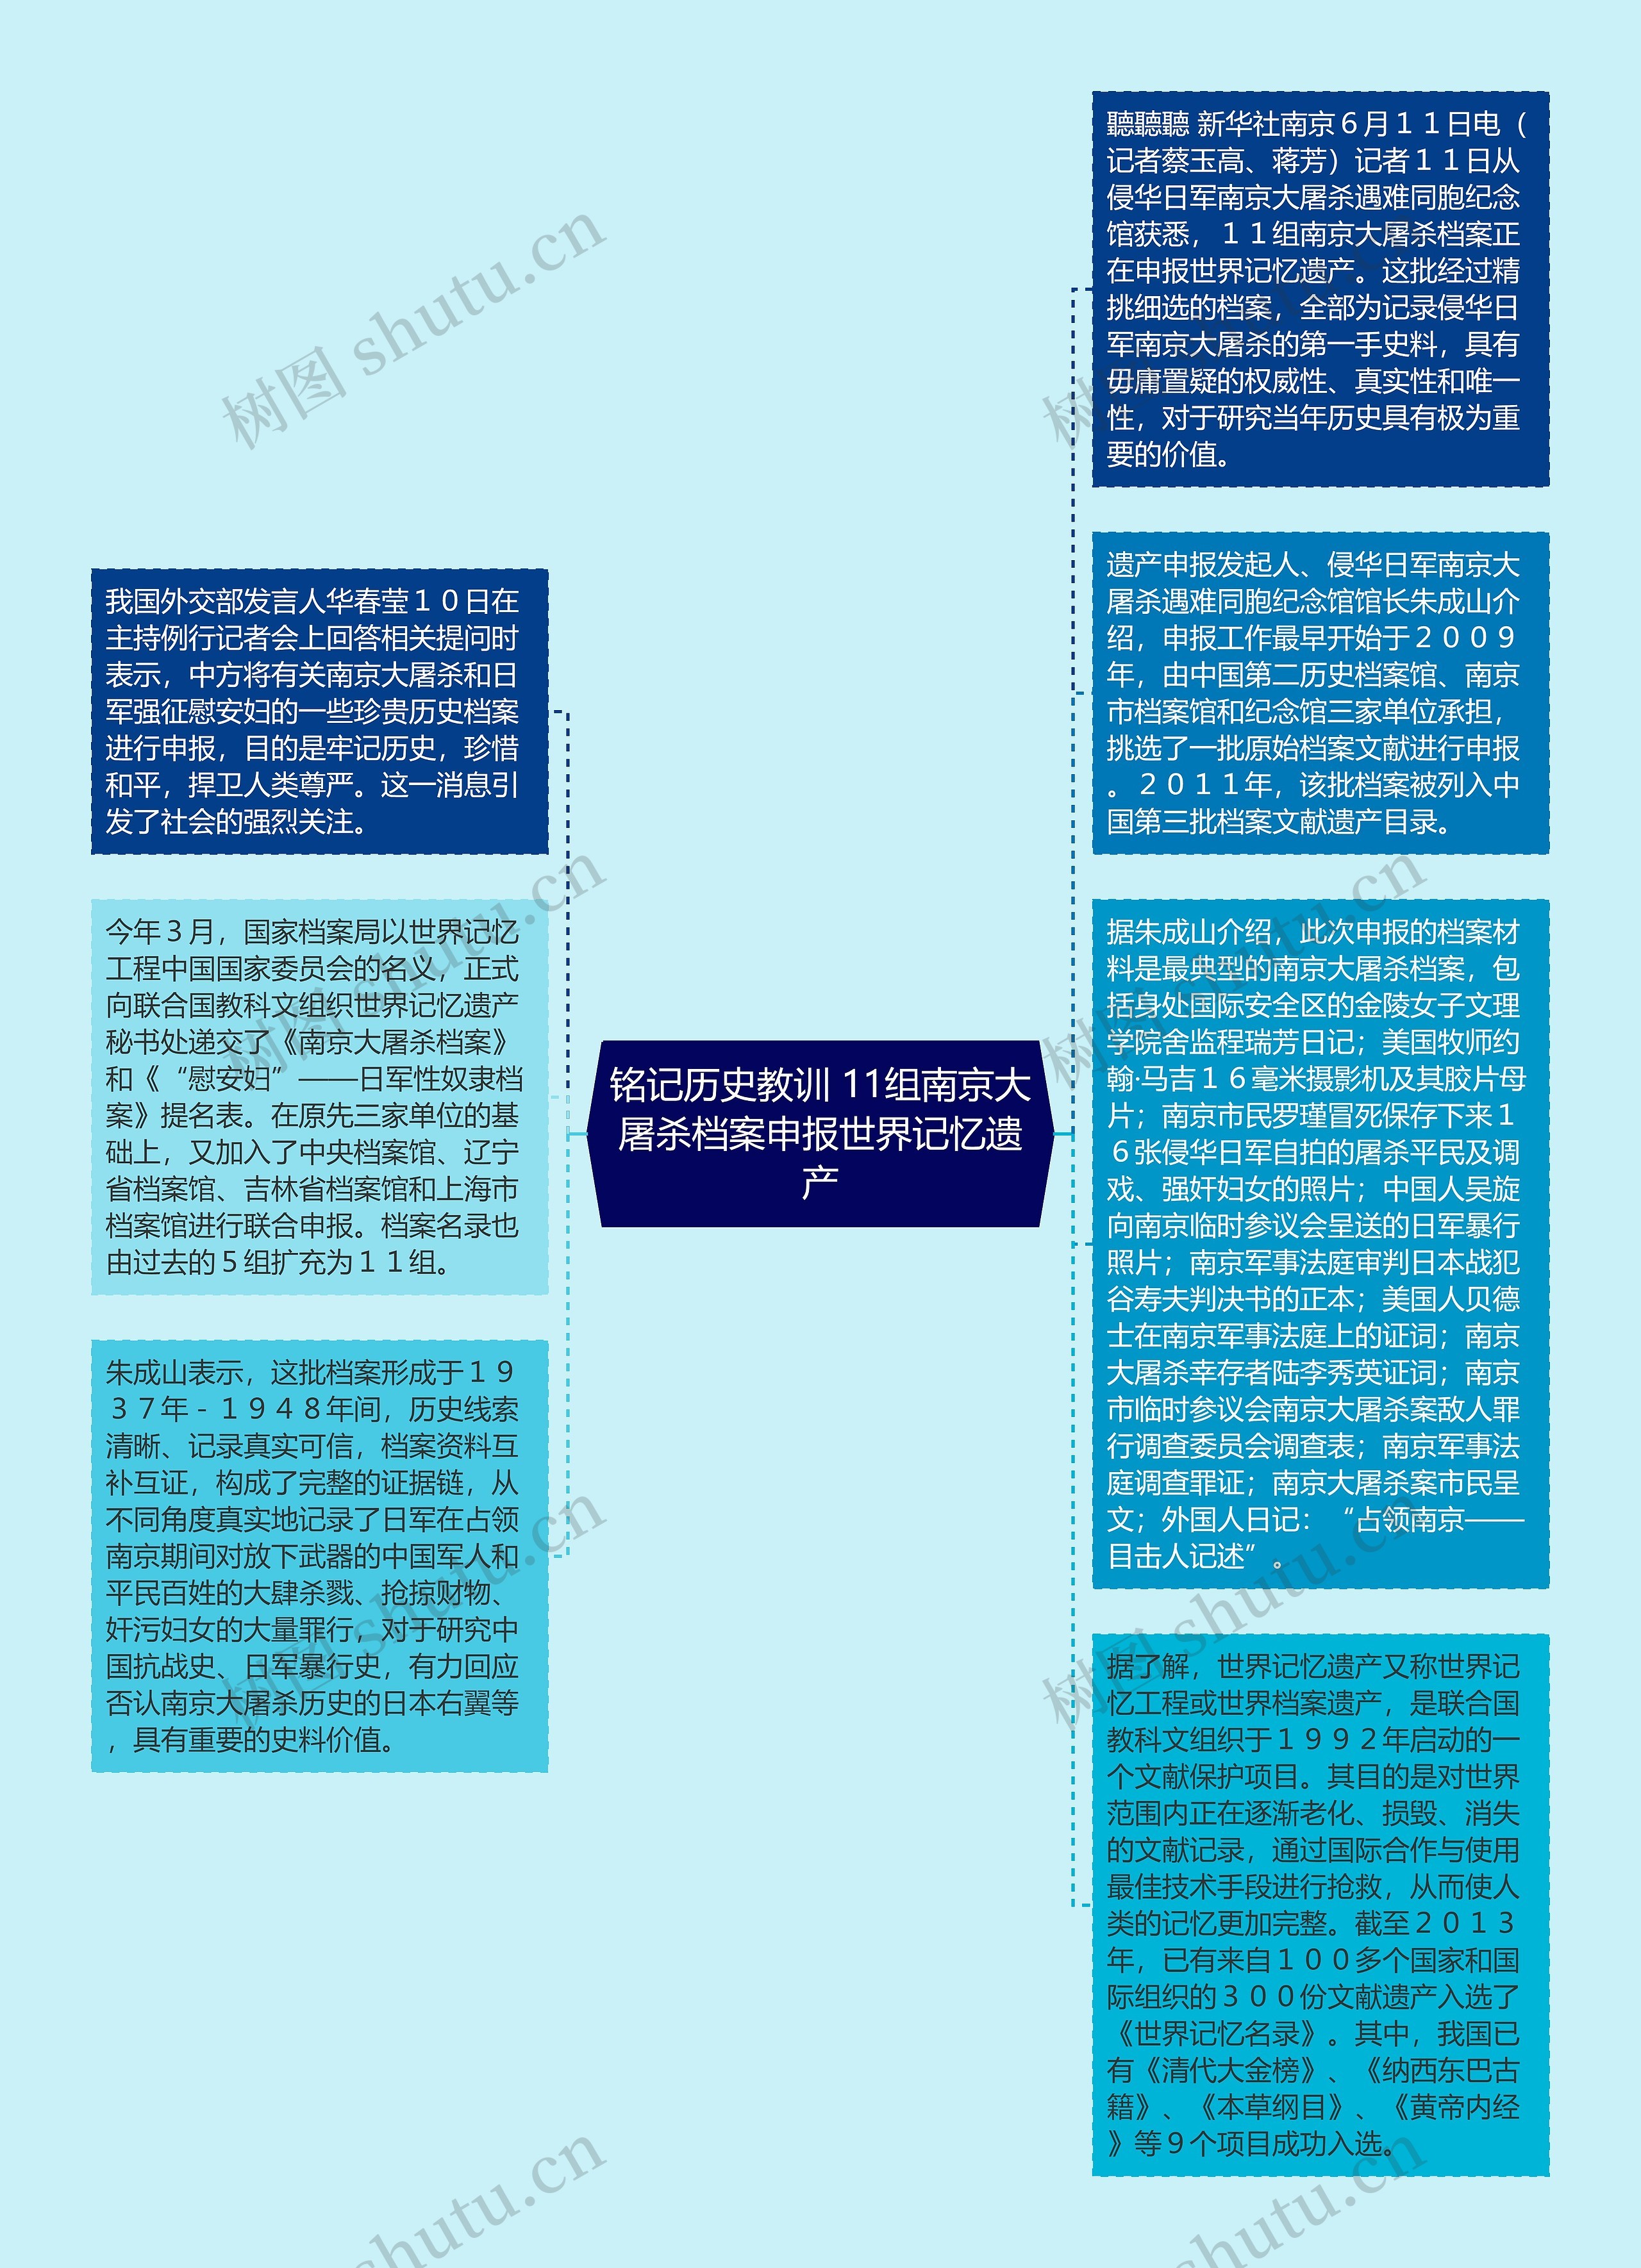 铭记历史教训 11组南京大屠杀档案申报世界记忆遗产